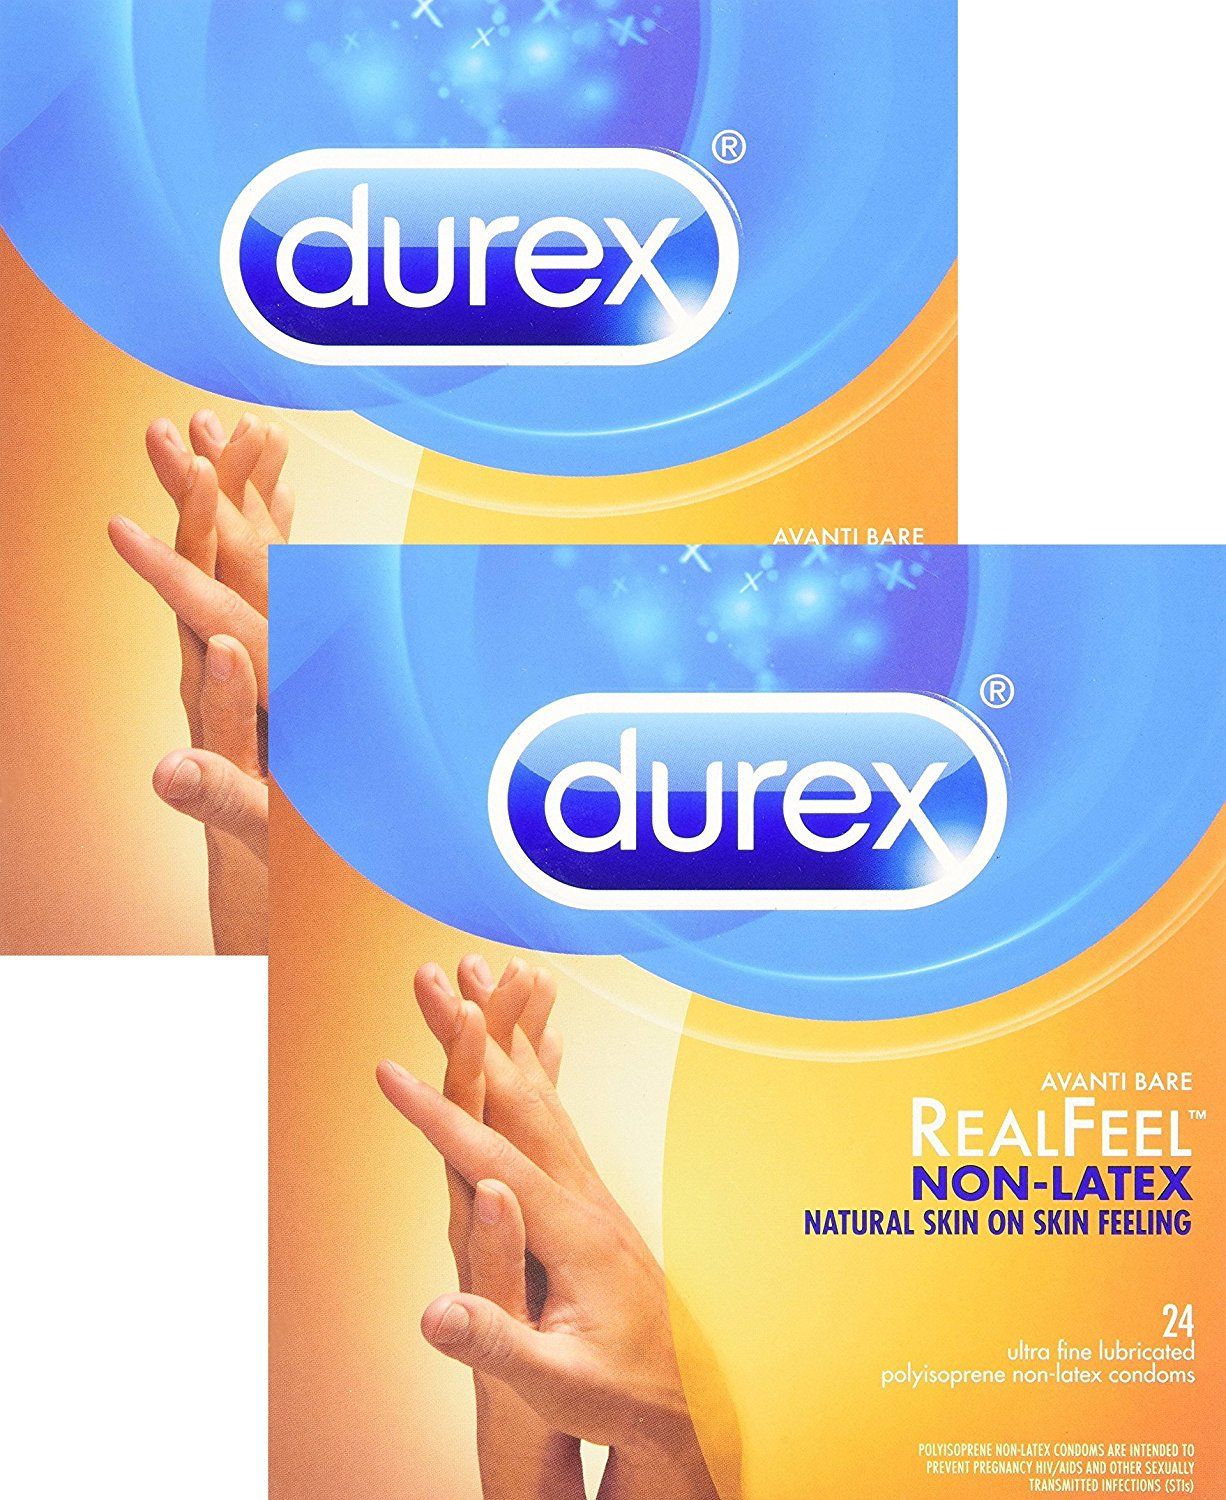 Rubber Condom